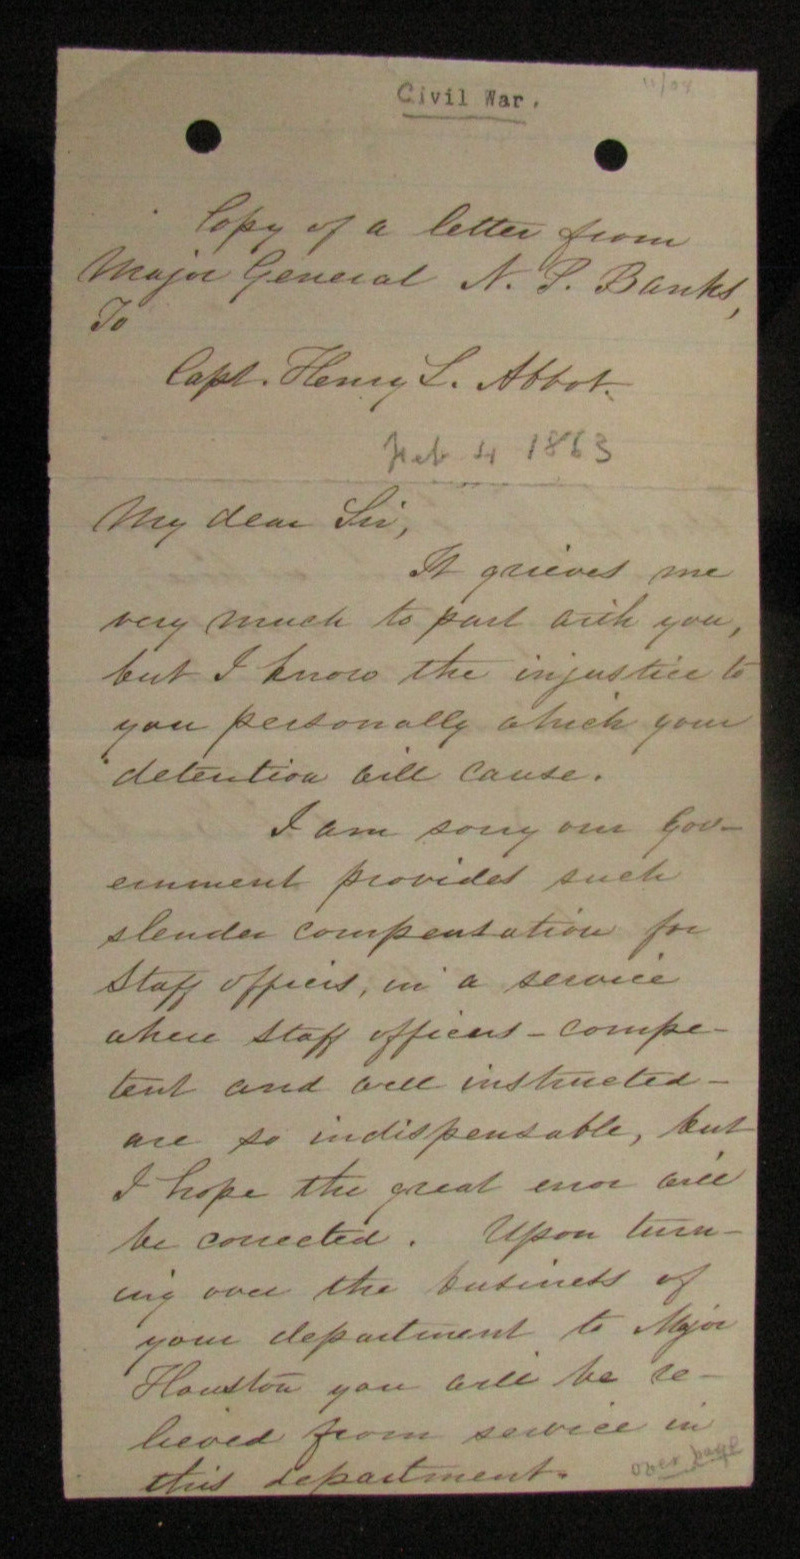 CIVIL WAR GENERAL NP BANKS LETTER TO GENERAL HENRY L ABBOTT 1863